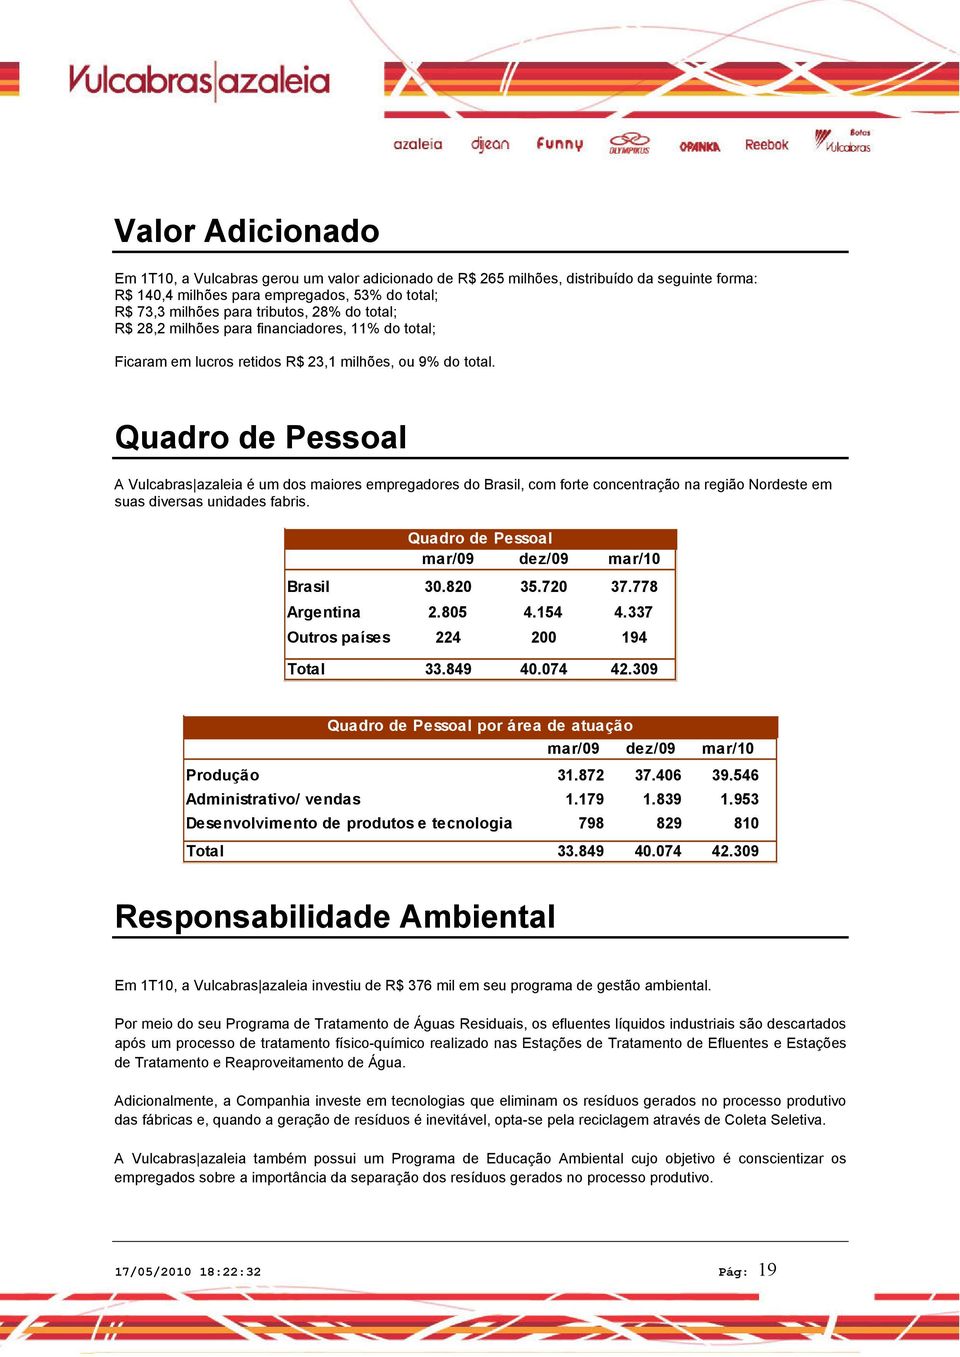 Quadro de Pessoal A Vulcabras azaleia é um dos maiores empregadores do Brasil, com forte concentração na região Nordeste em suas diversas unidades fabris.